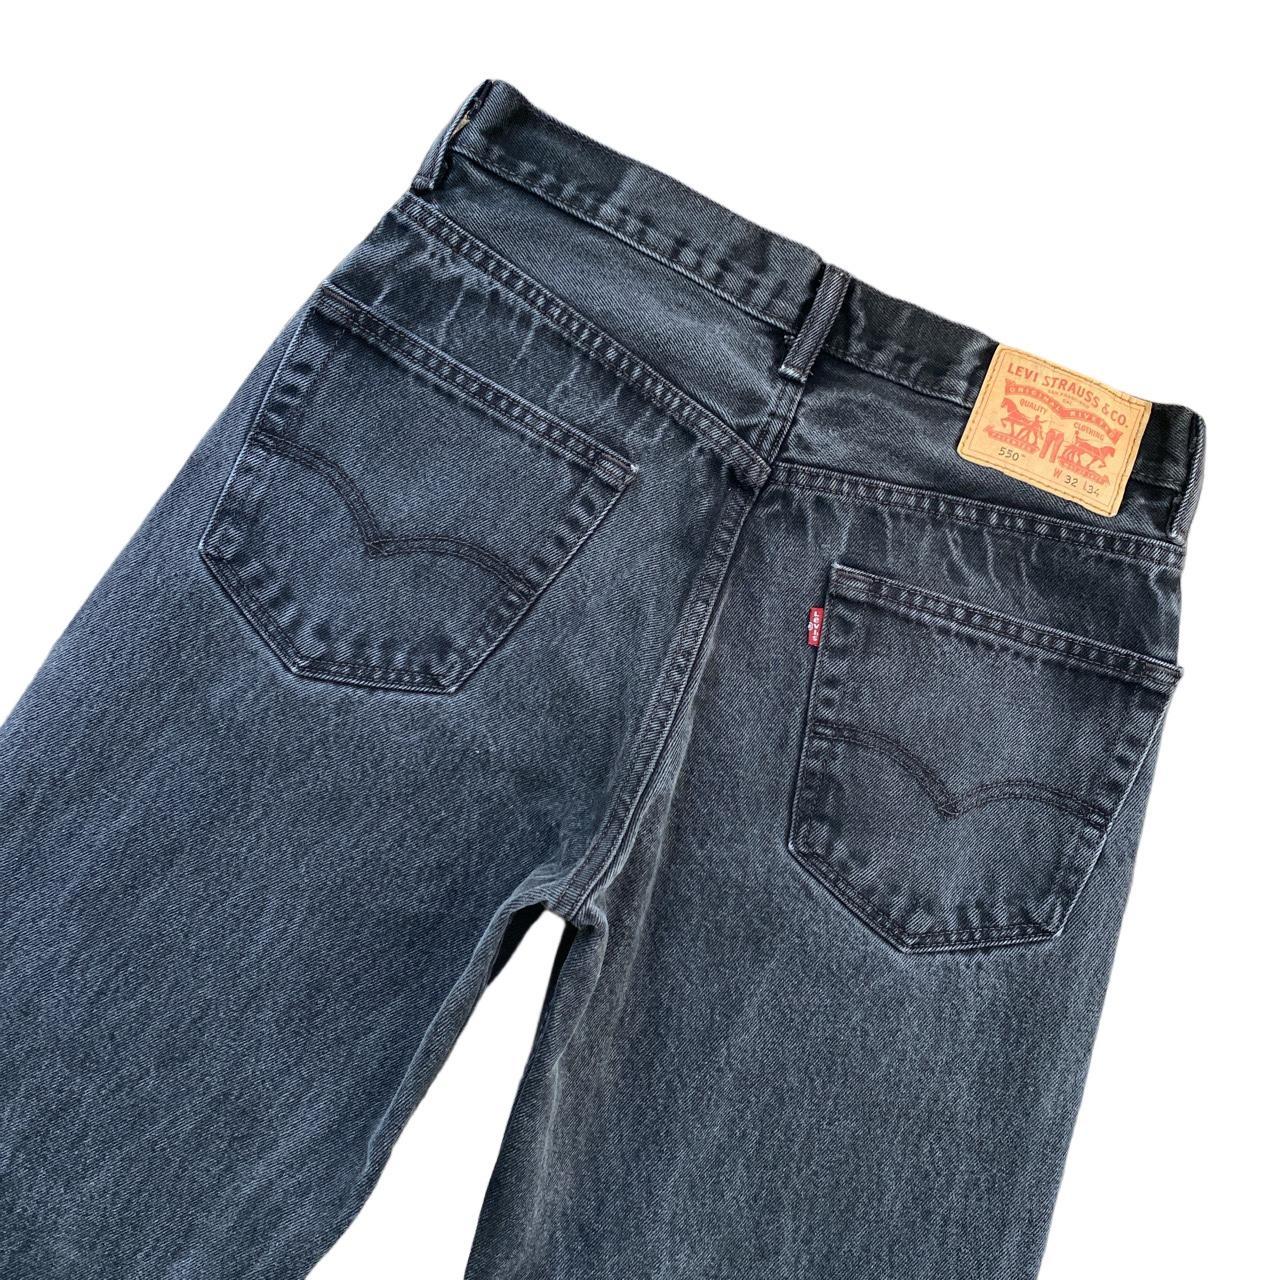 Levi’s 550 vintage jeans. Pockets. Belt loops.... - Depop